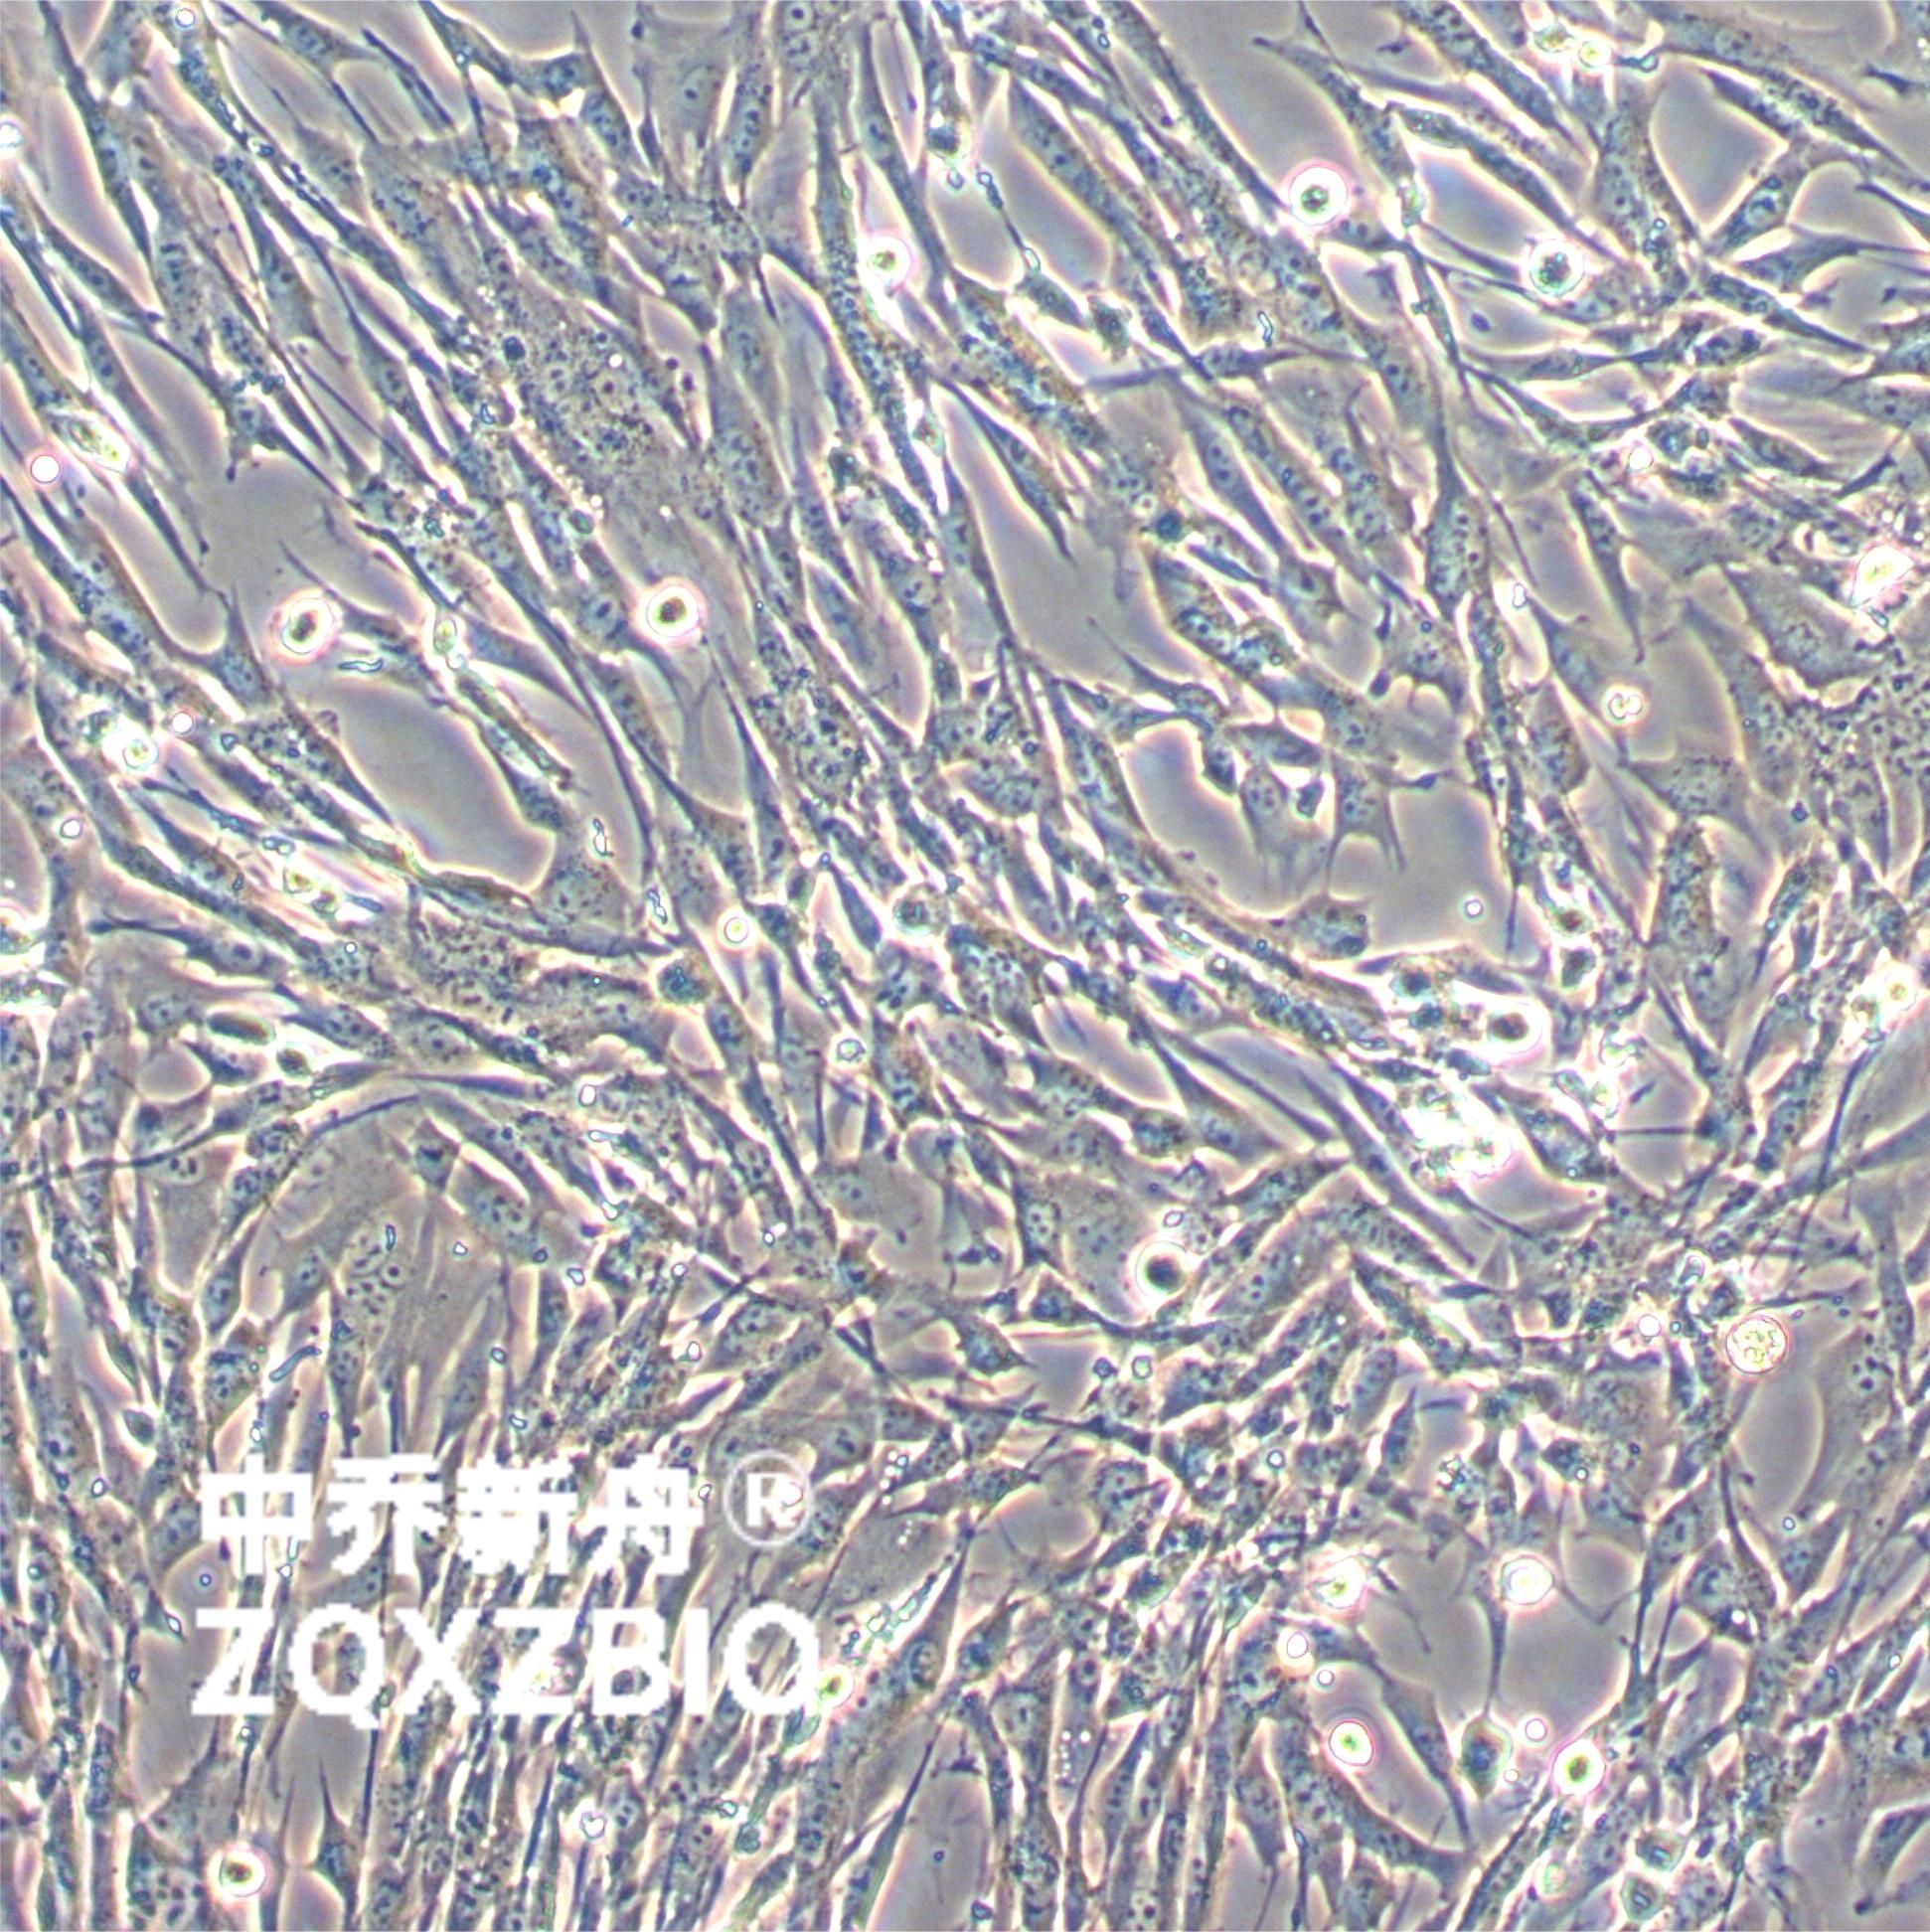 BHK-21 [C-13]仓鼠肾成纤维细胞